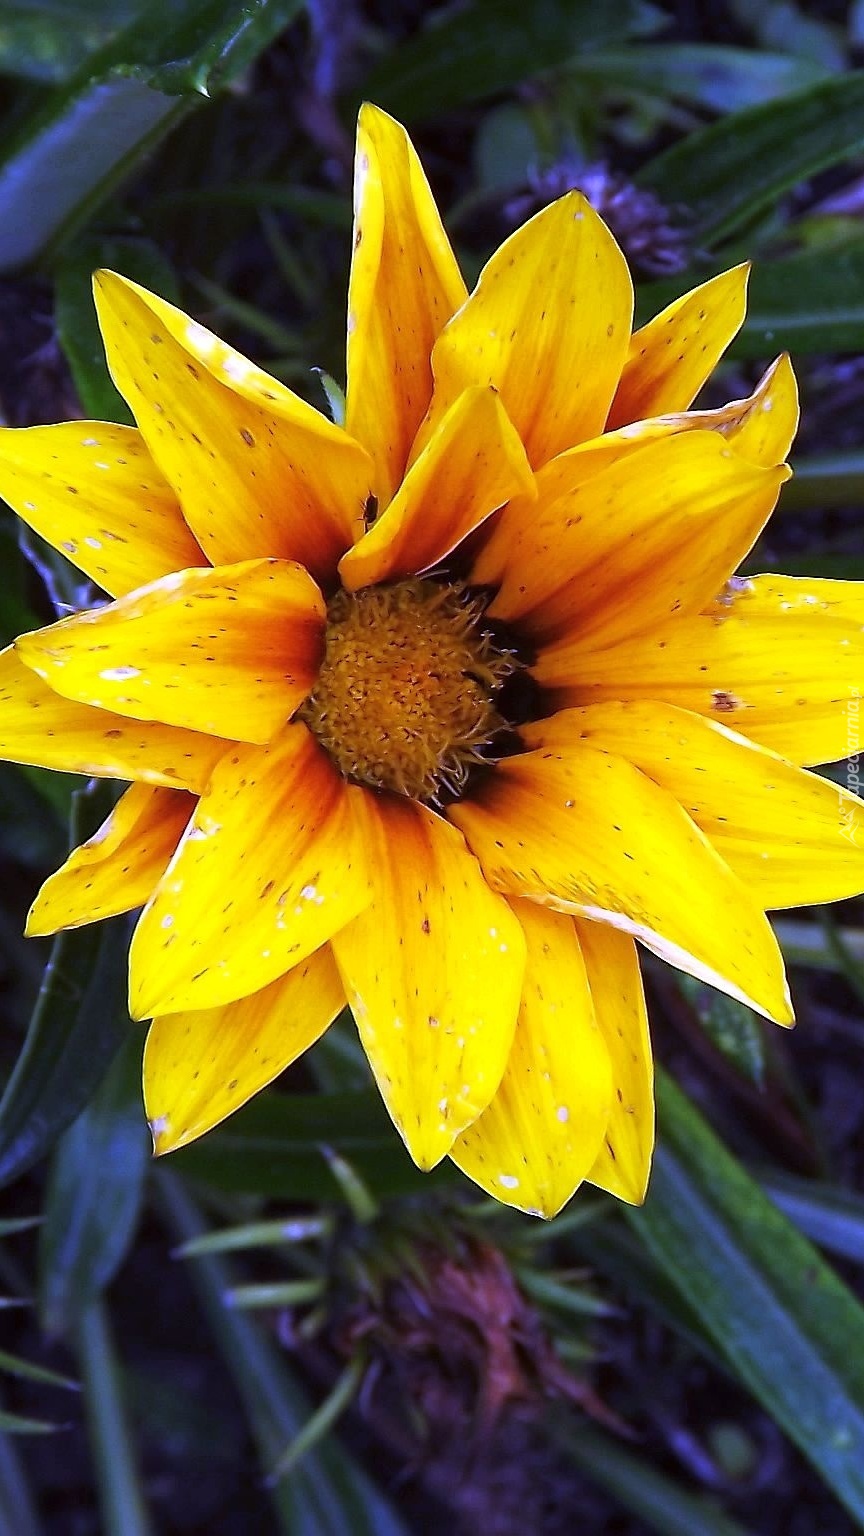 Kwiat podobny do słonecznika